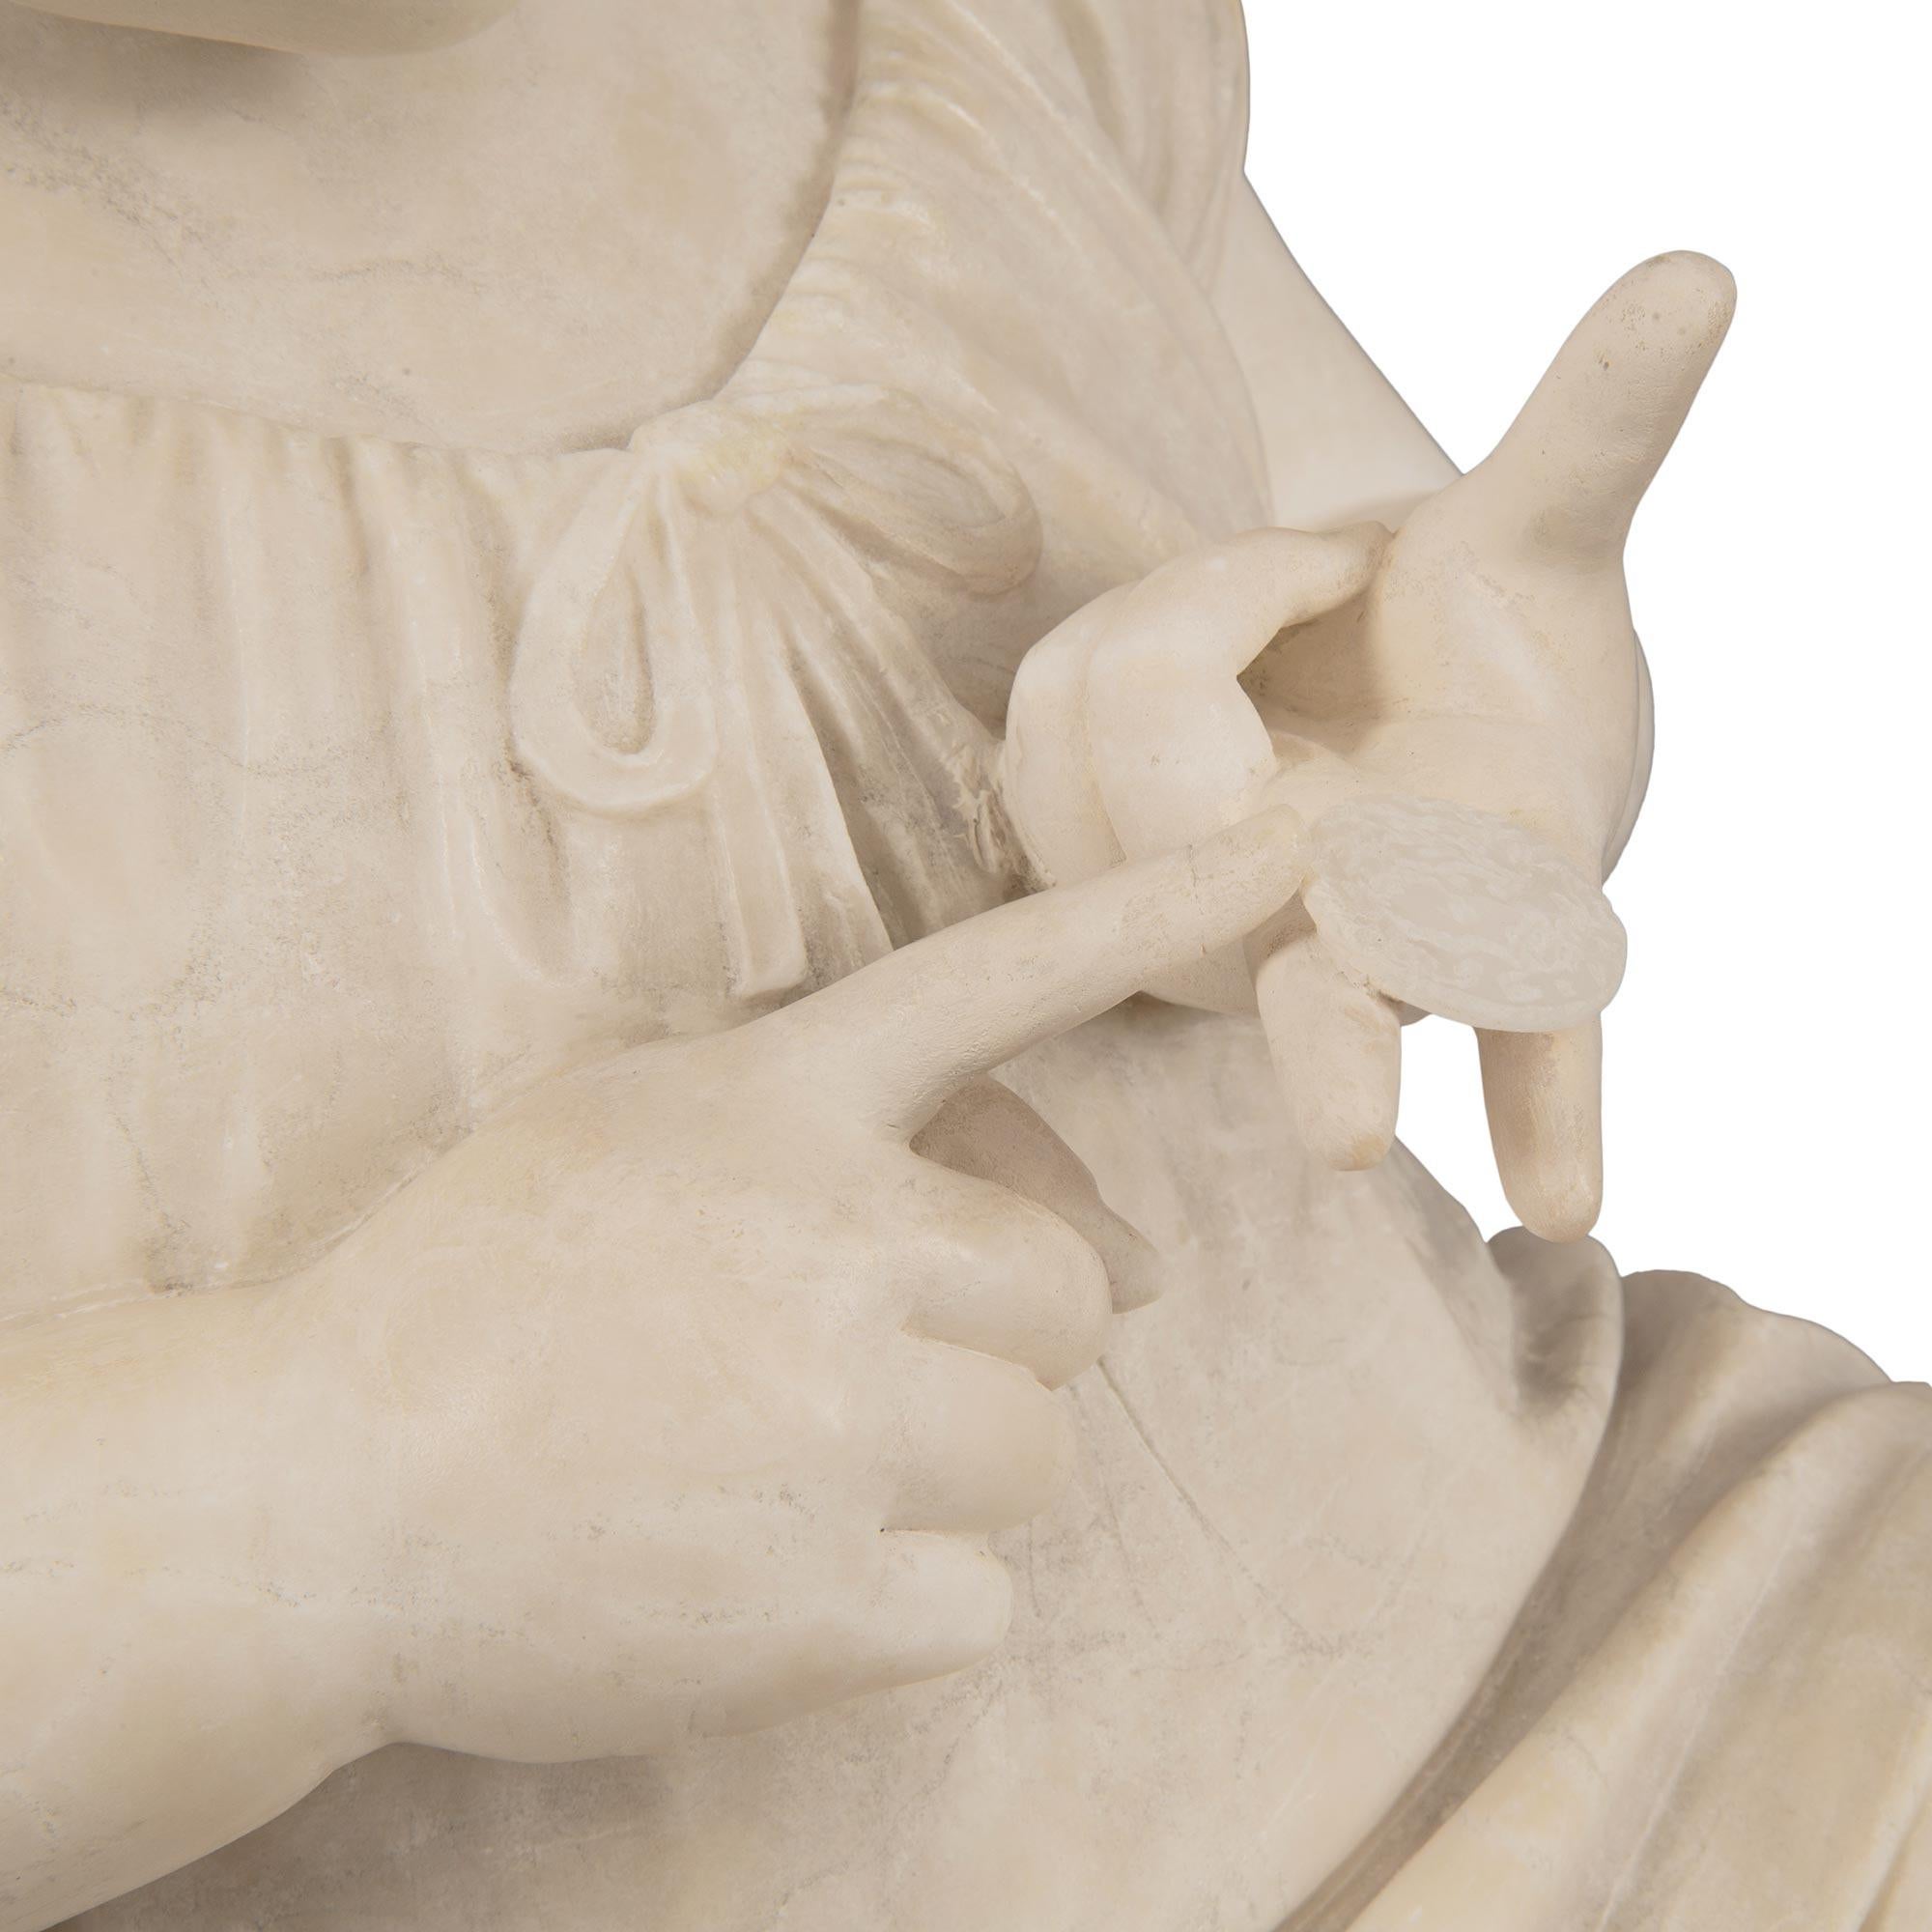 Italian 19th Century White Carrara Marble Statue Titled ‘Economista Precoce’ For Sale 4